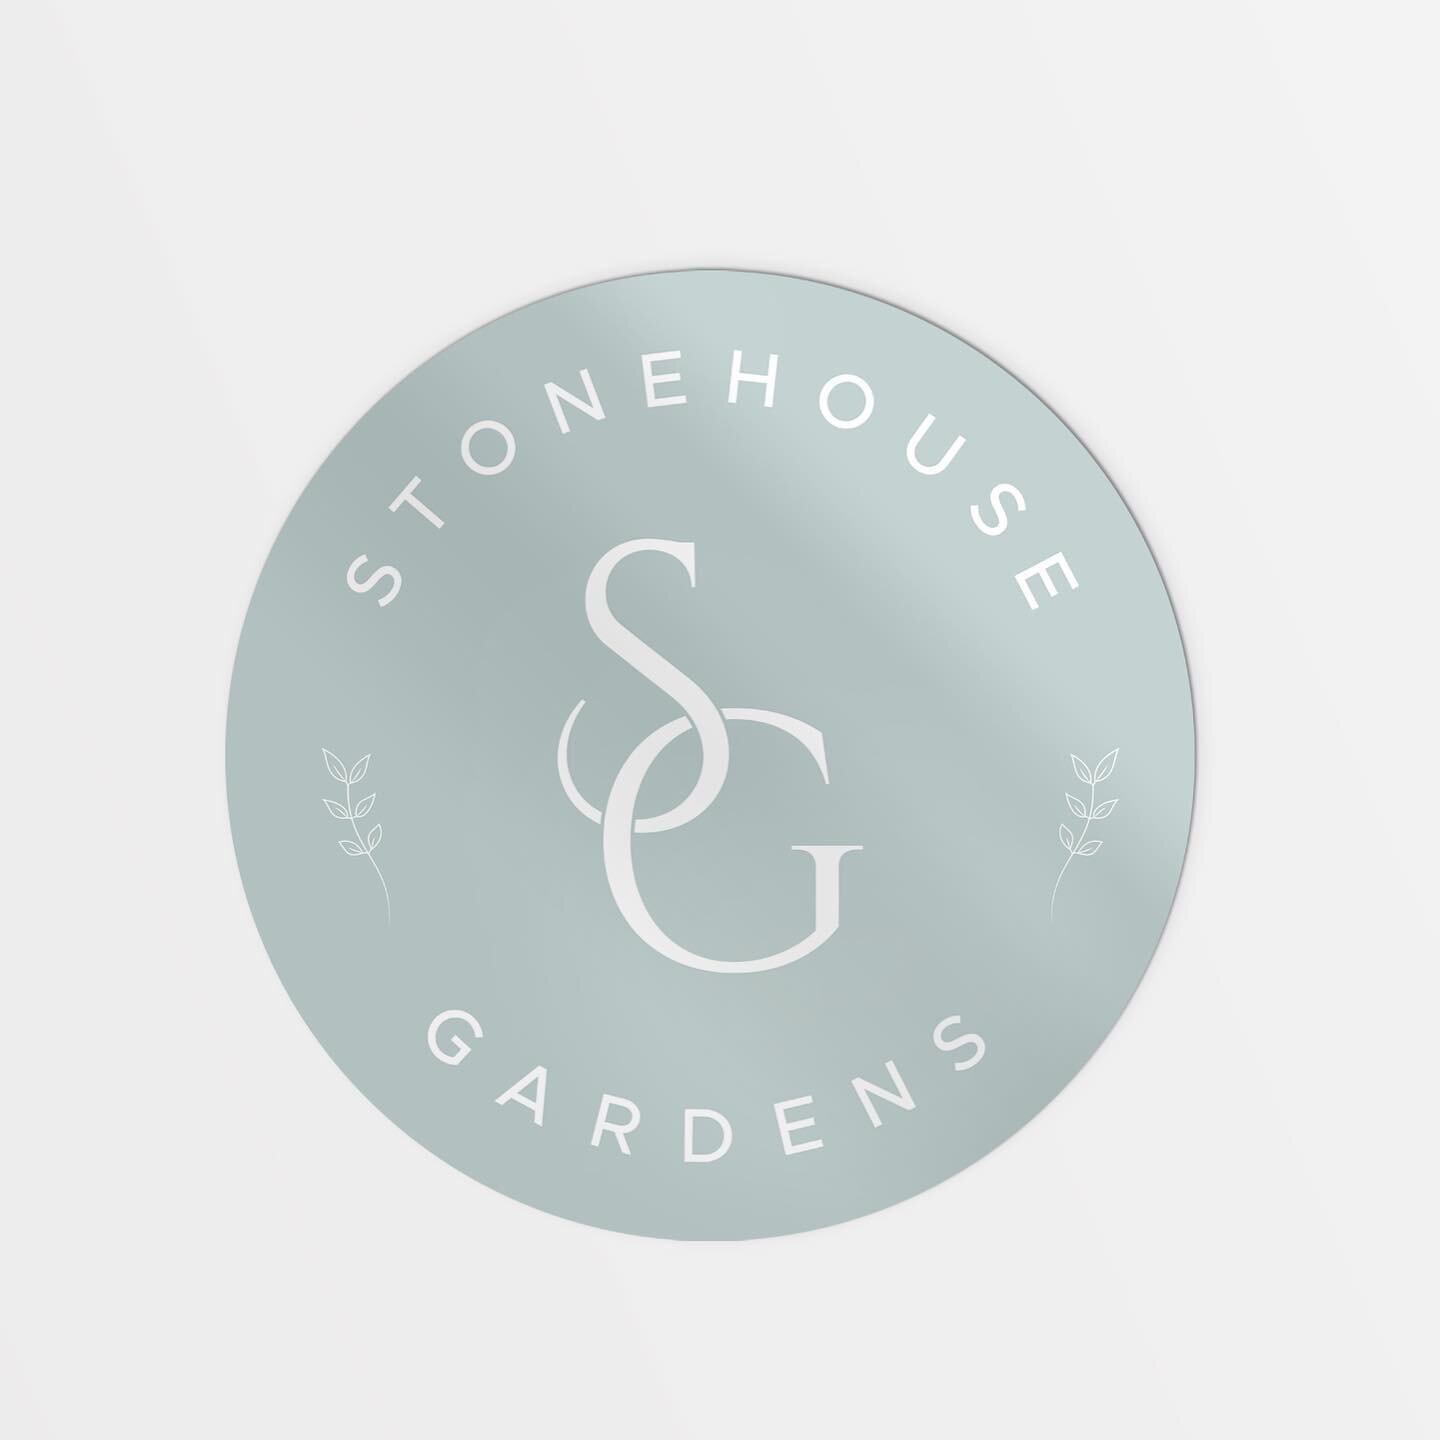 Branding for Stonehouse Gardens - Alternate Logo